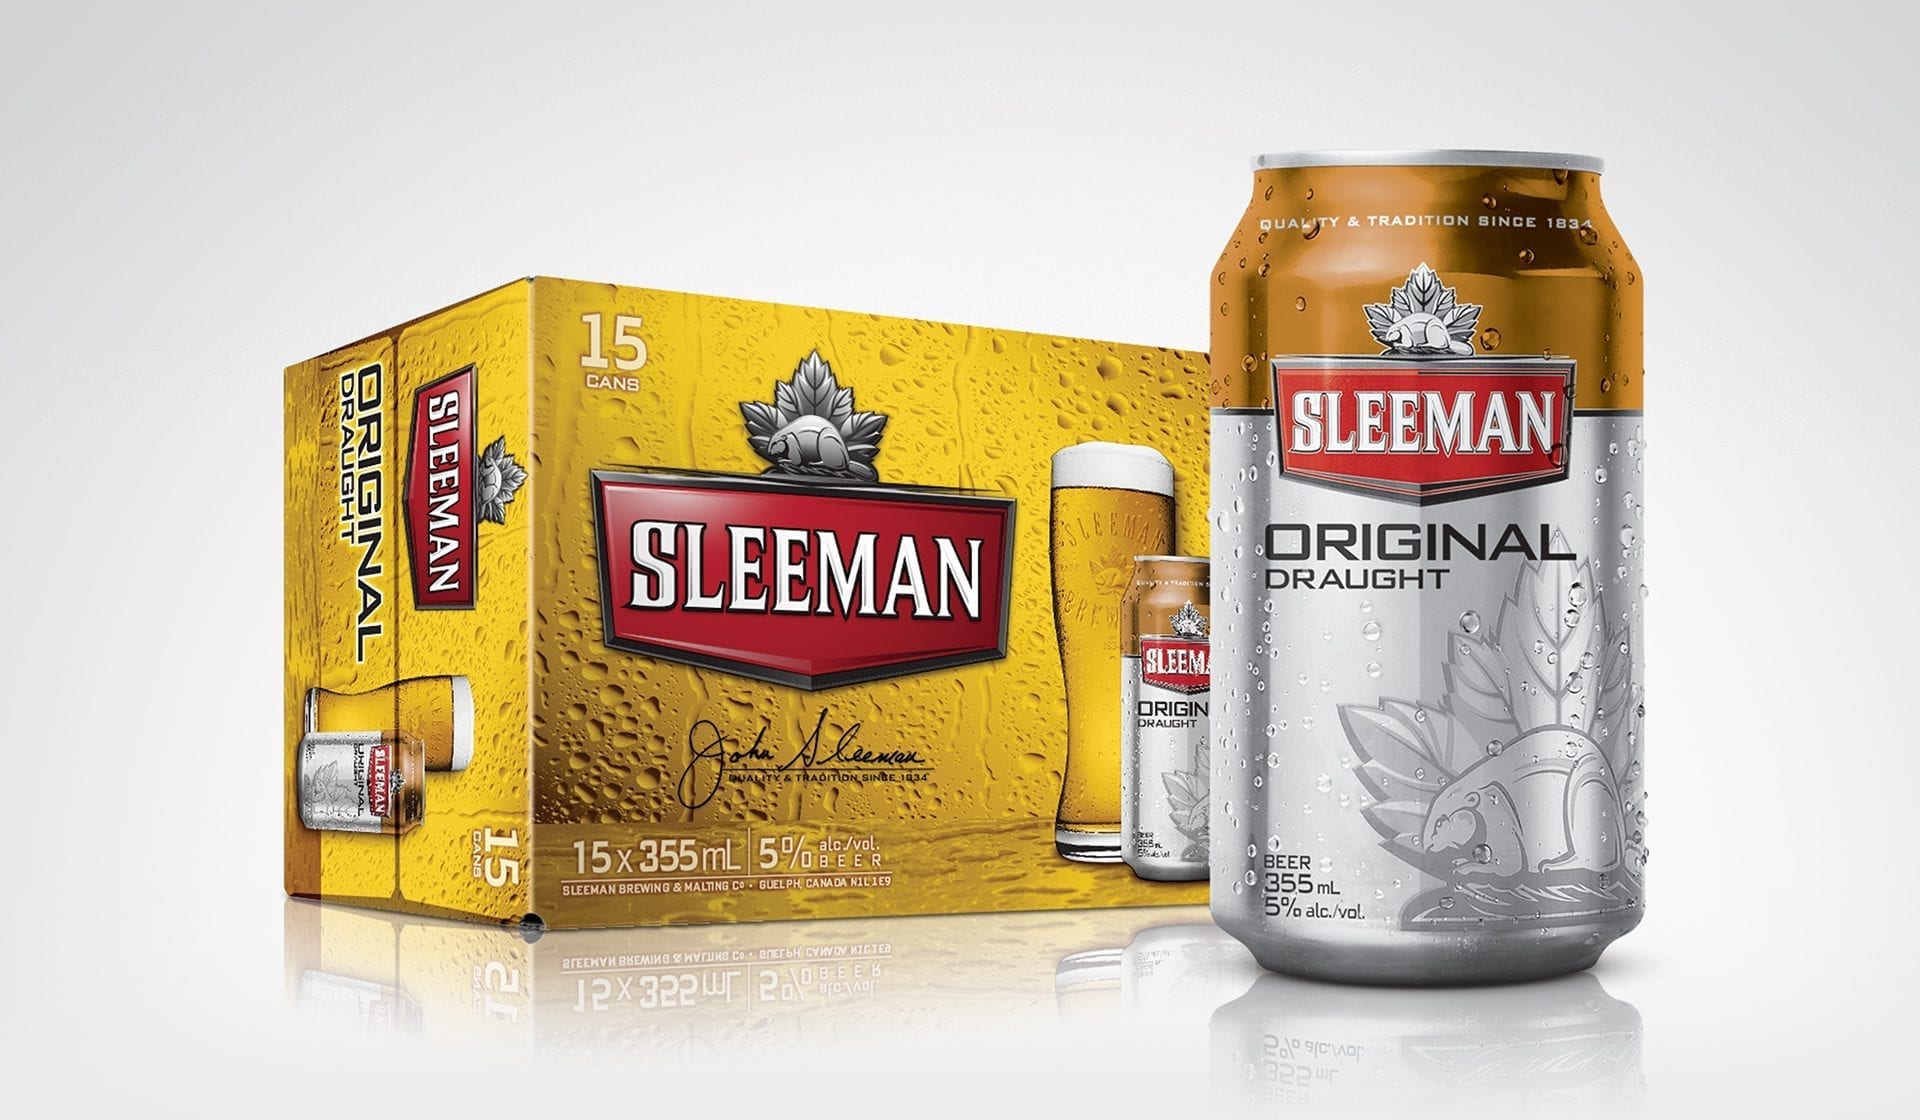 Sleeman beer can design concept